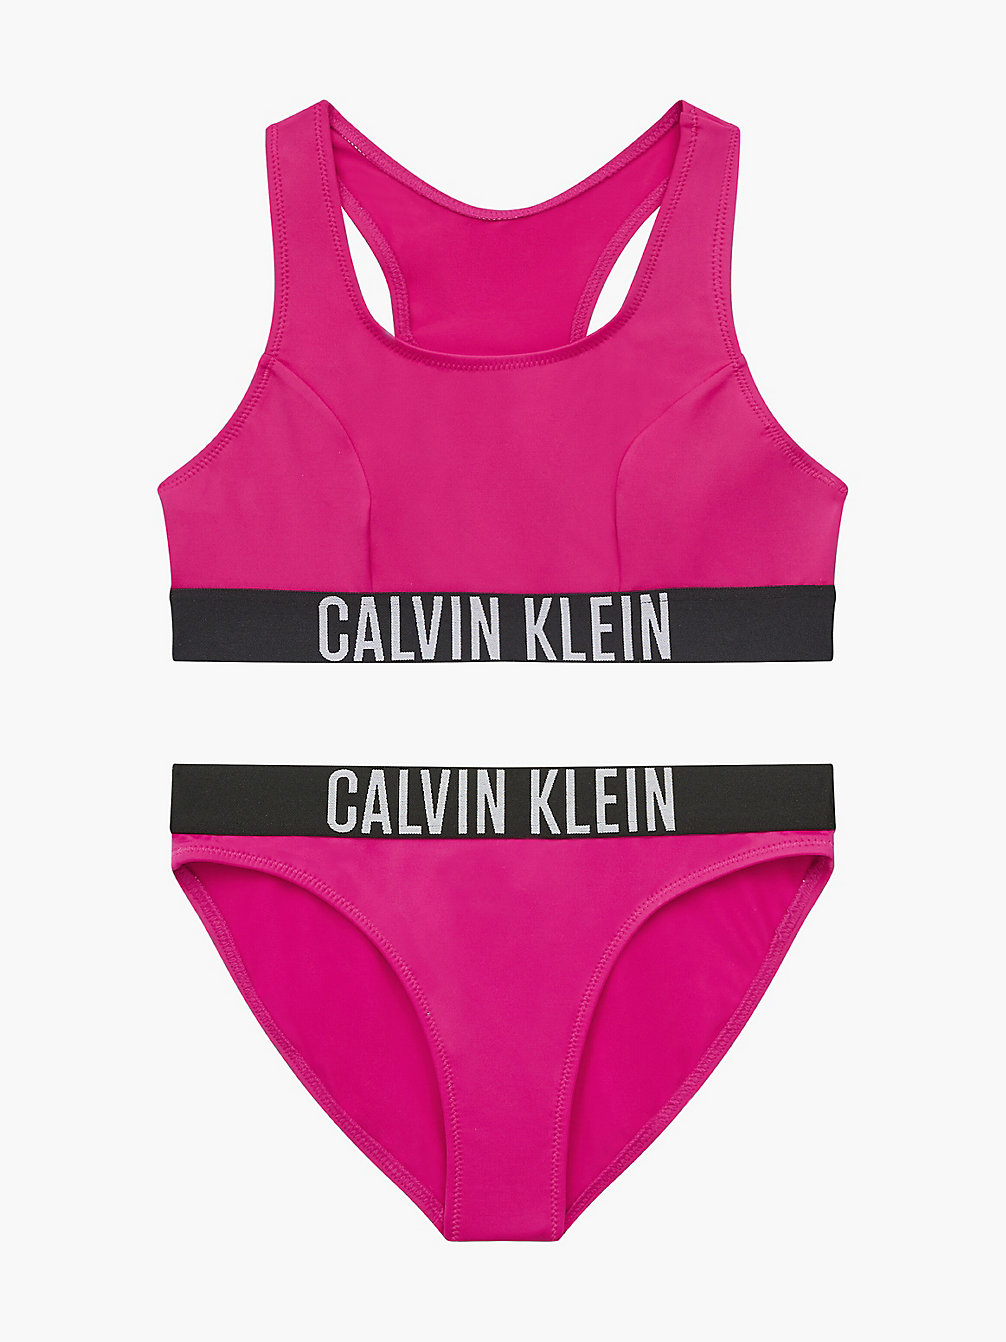 ROYAL PINK > Bikini-Set Mit Bralette Für Mädchen - Intense Power > undefined girls - Calvin Klein